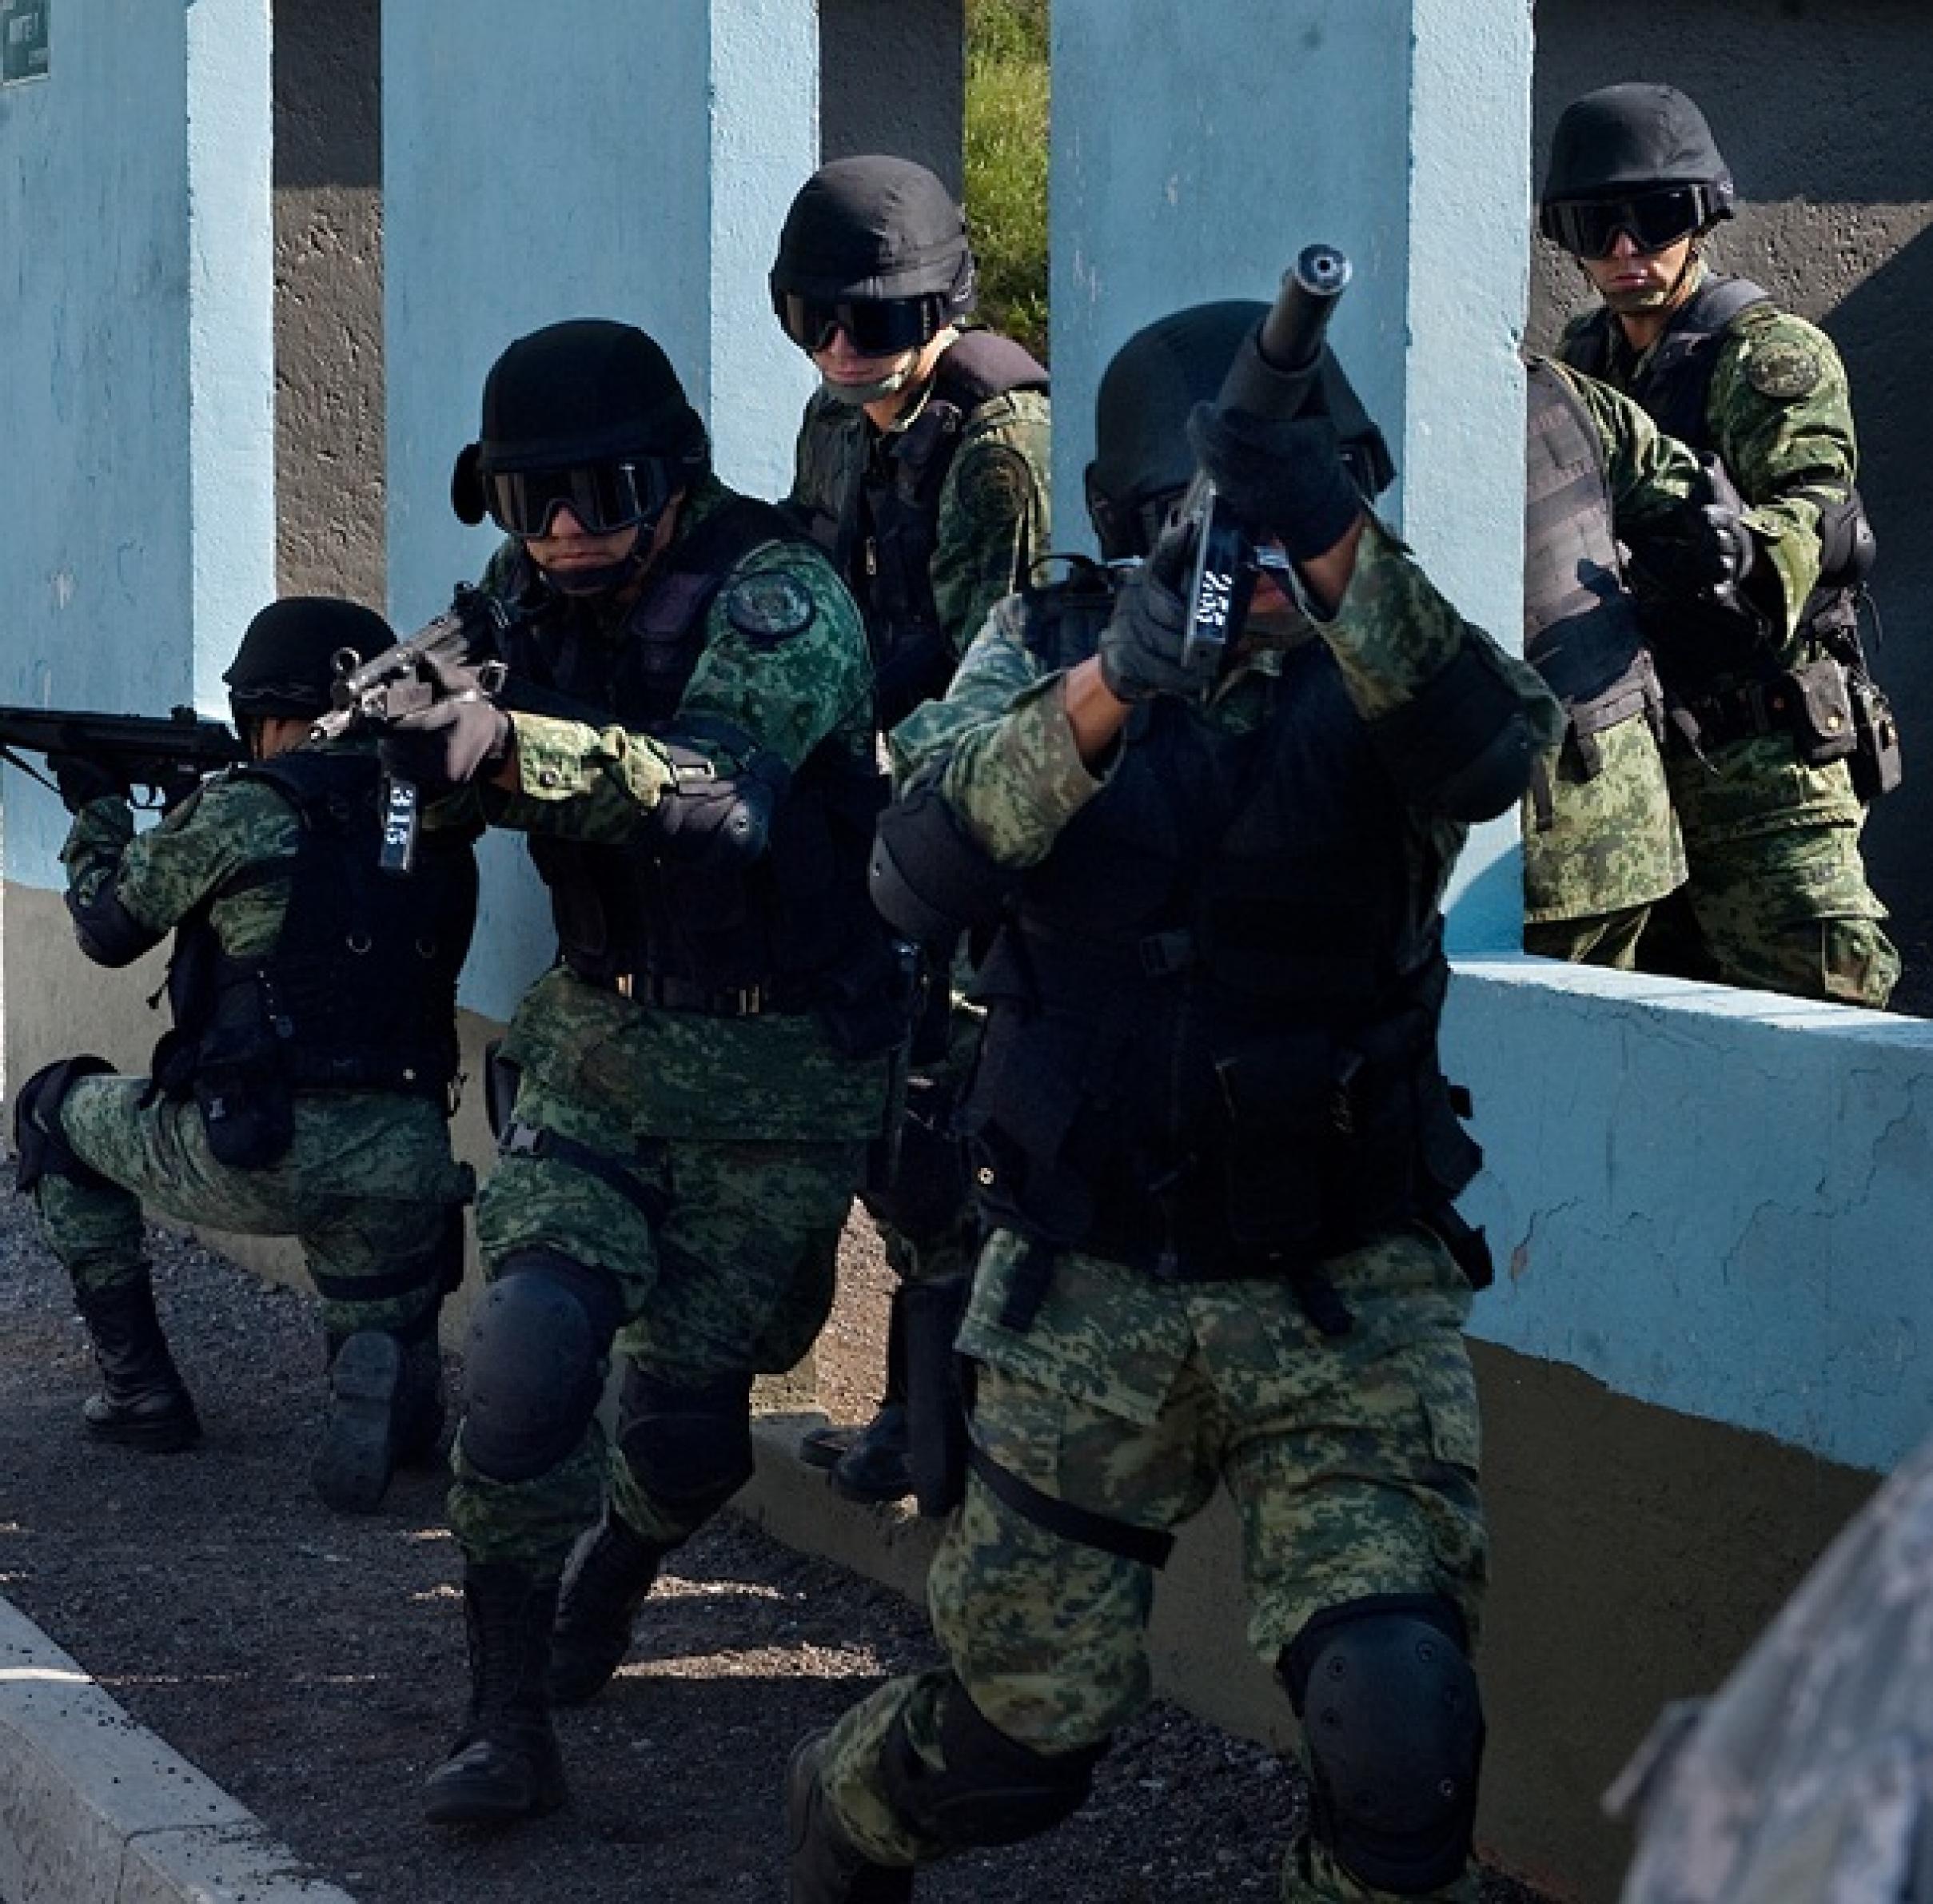 Bewaffnete Soldaten der mexikanischen Armee zielen nach vorne auf den Beobachter